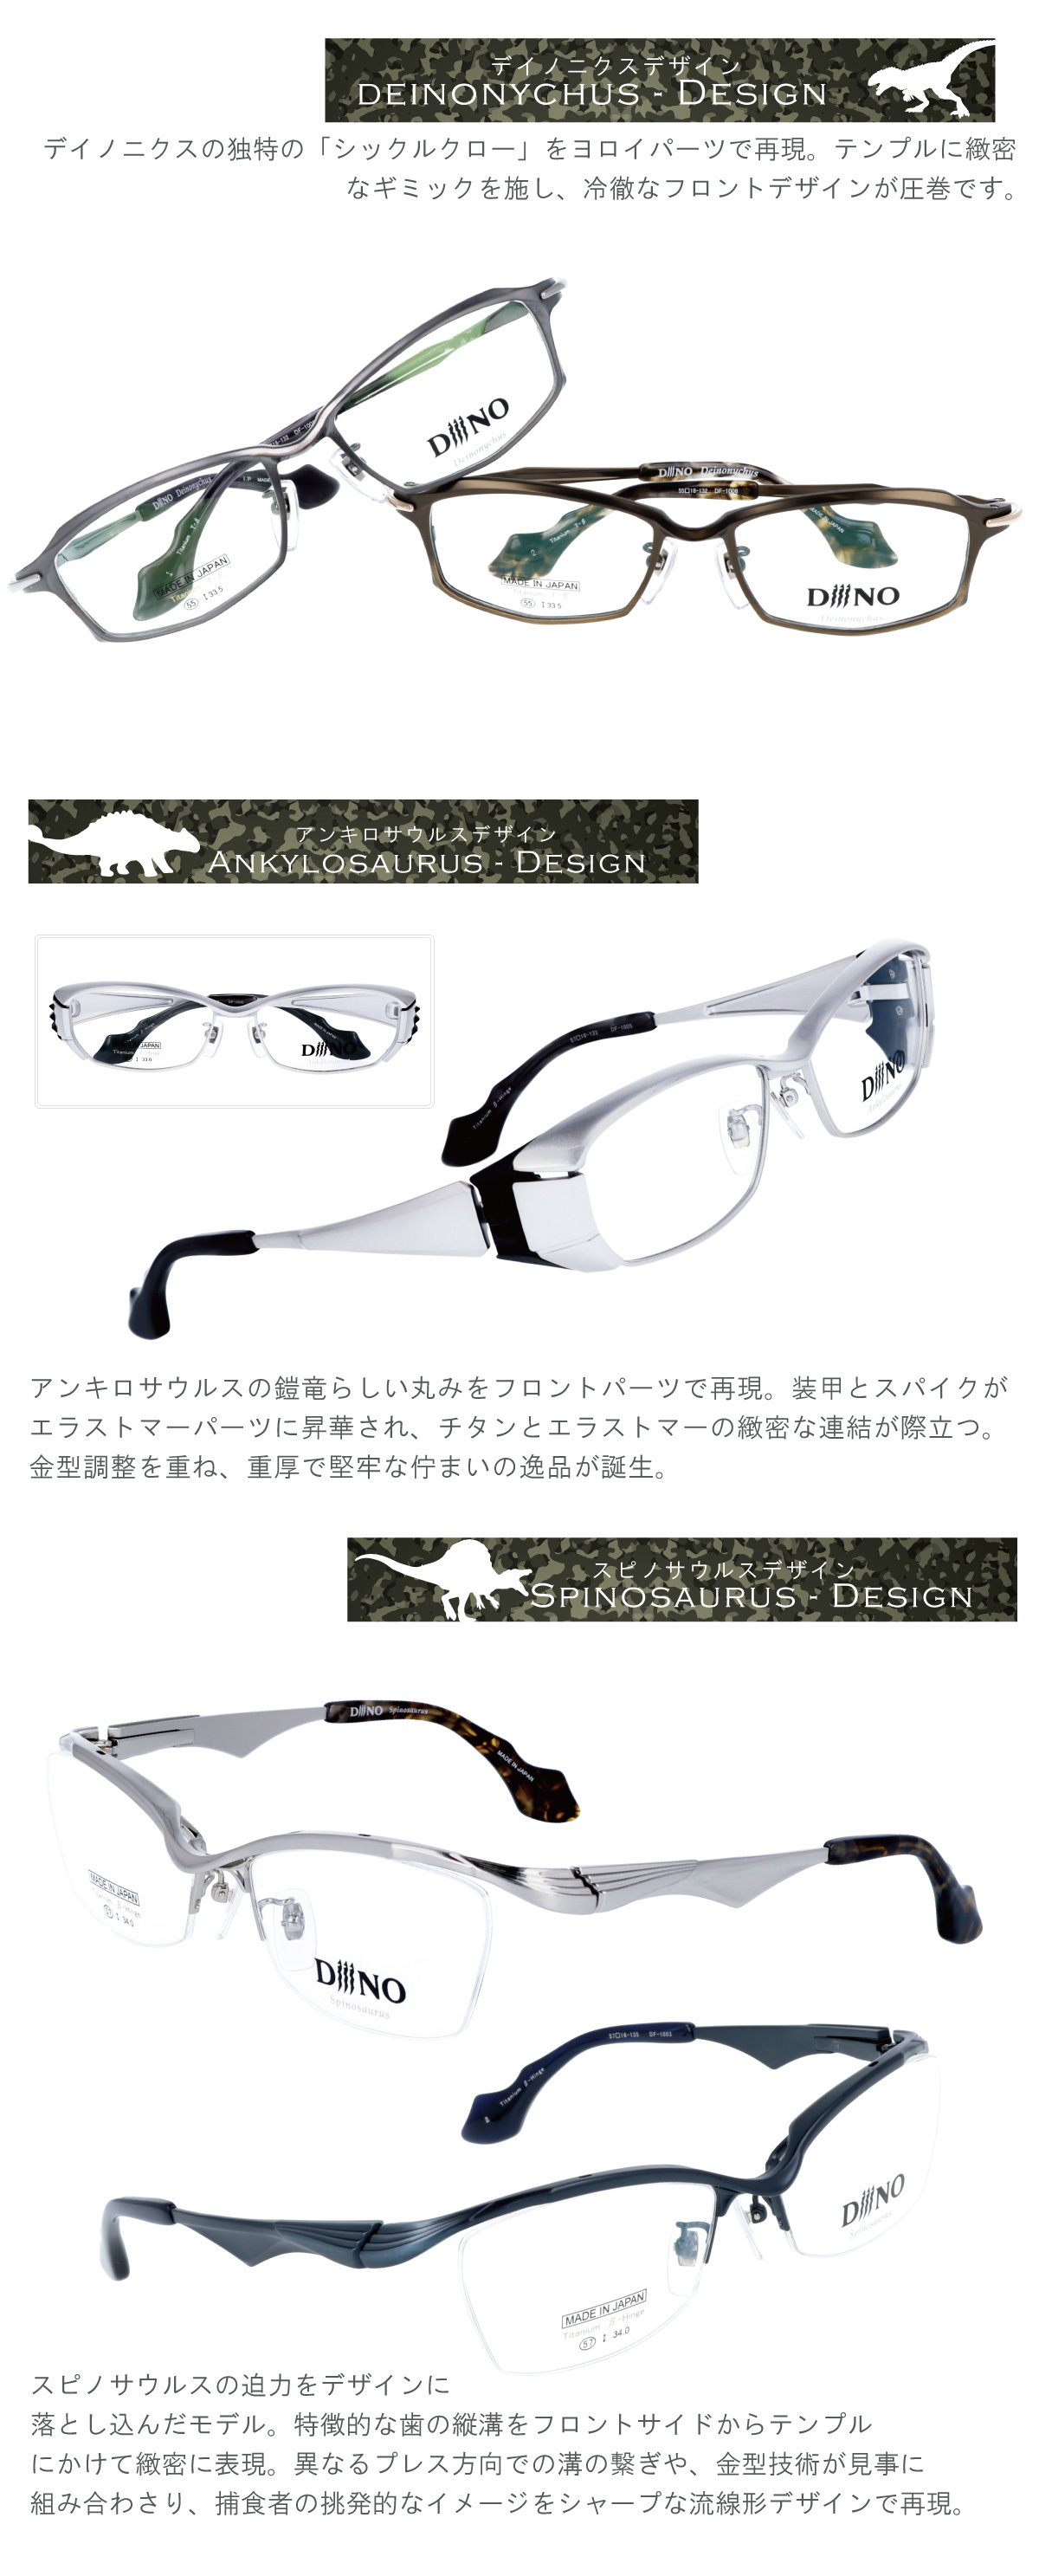 DiiiNO（ディーノ）ブランドの恐竜モチーフのメガネ